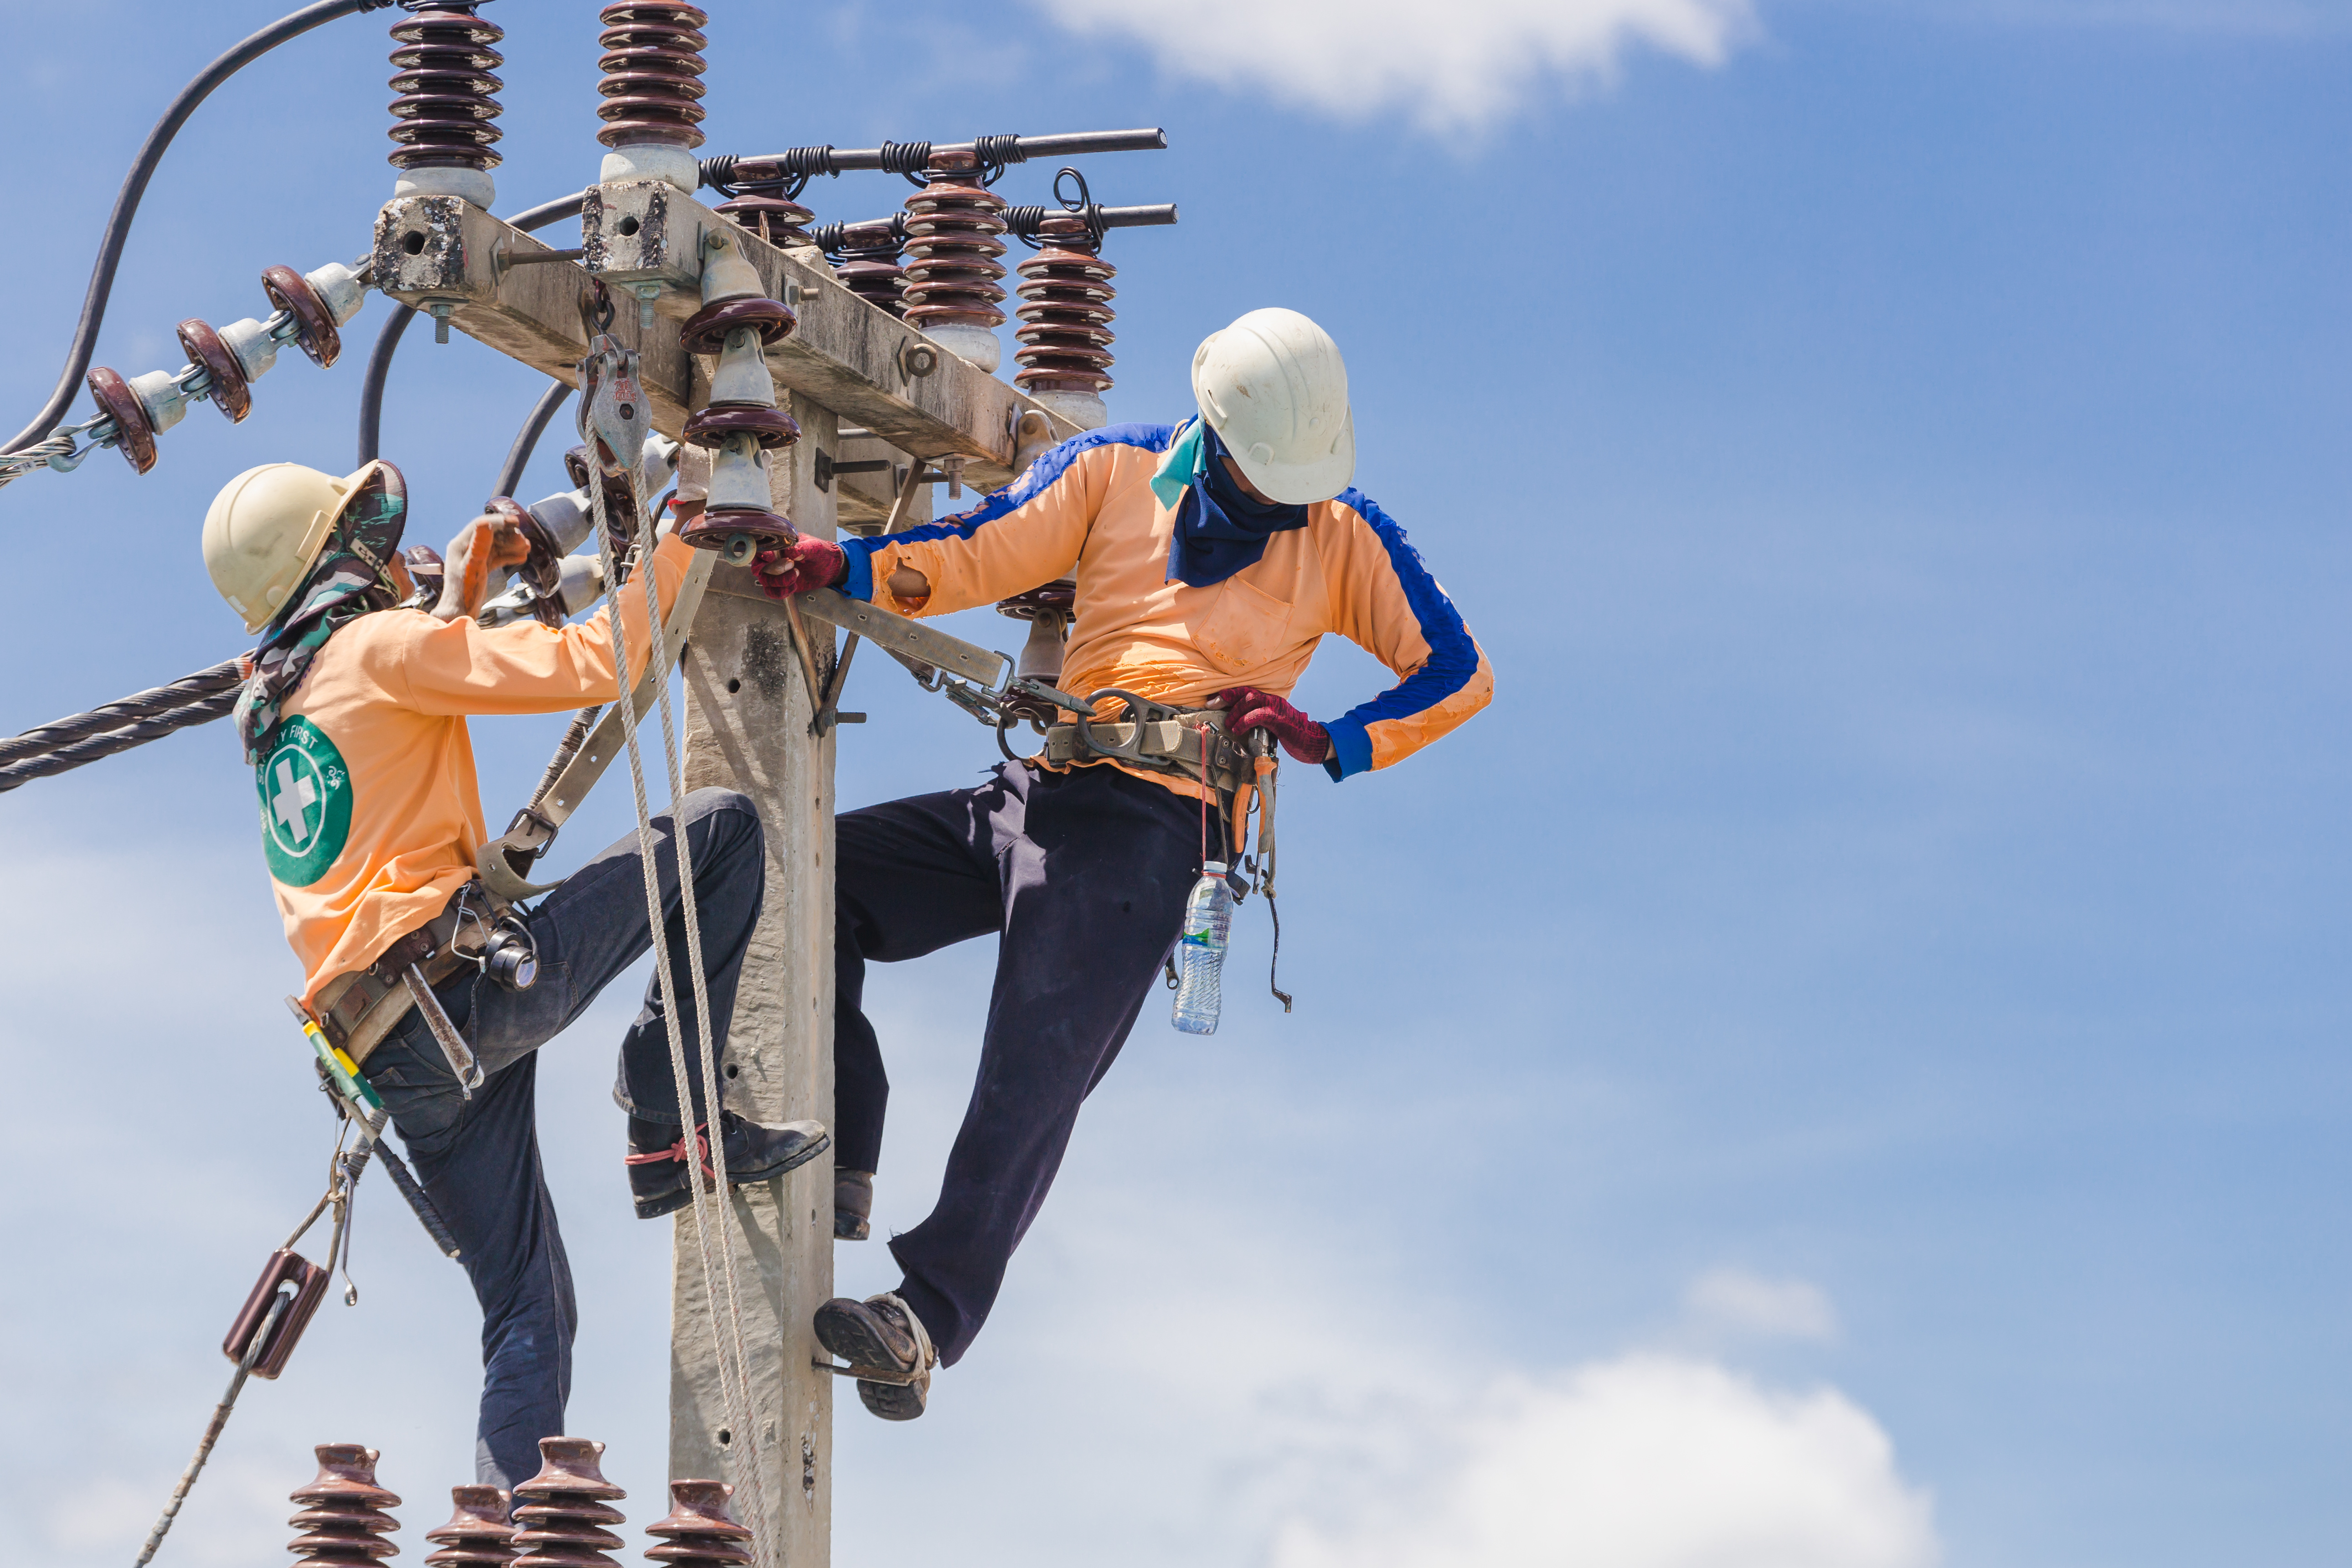 LV, MV and HV power lines - construction and modernization - Eltel Networks